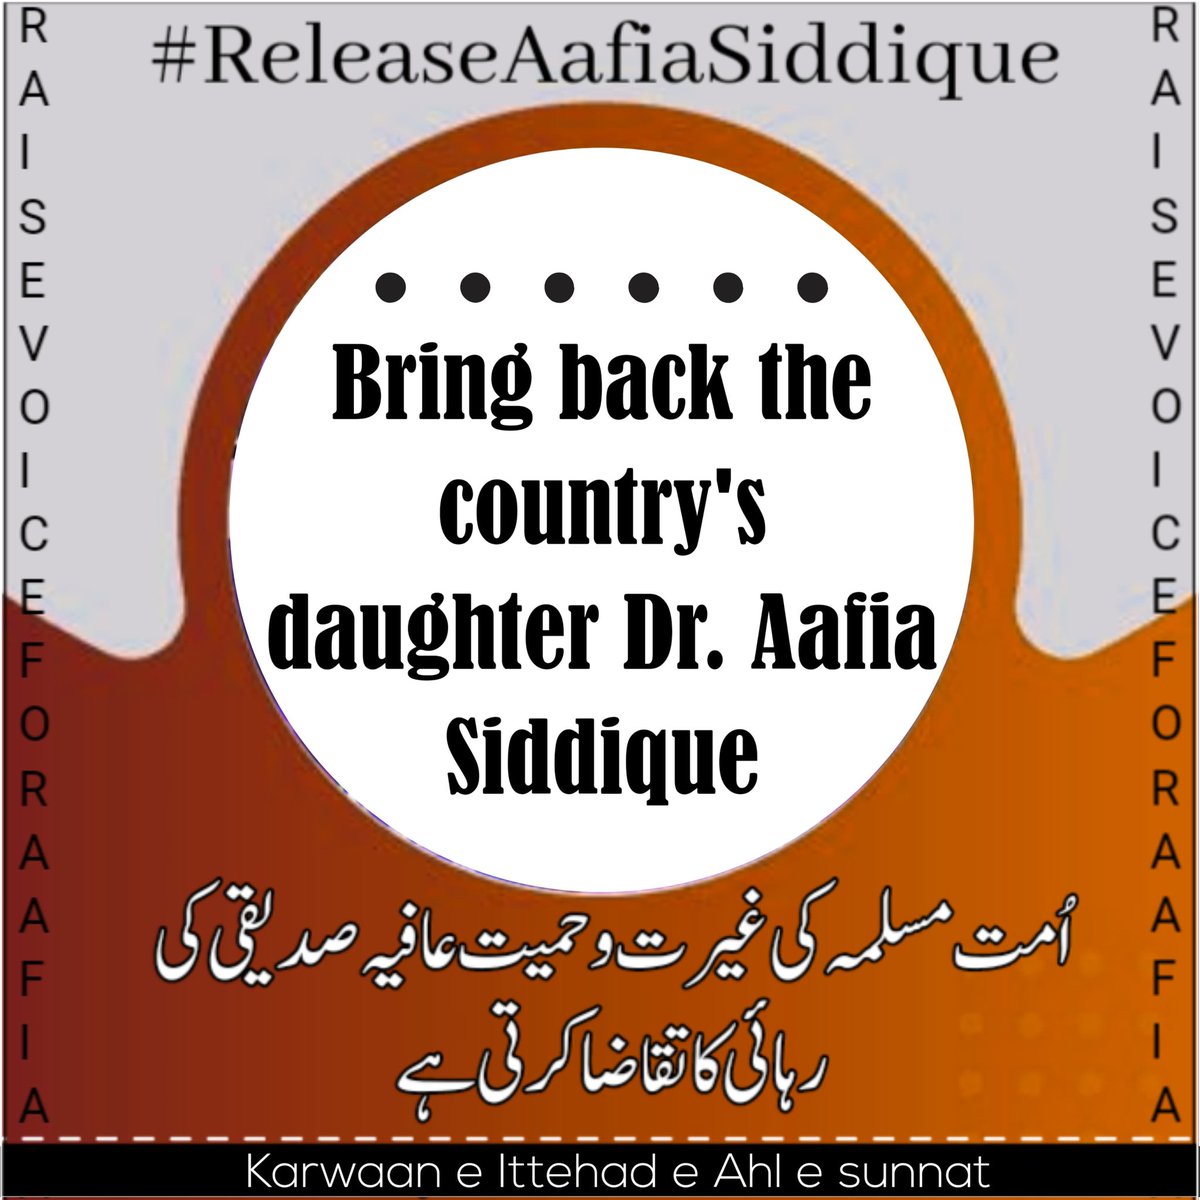 امت مسلمہ کی غیرت و حمیت عافیہ صدیقی کی رہائی کا تقاضا کرتی ہے⛓️

#ReleaseAafiaSiddique
#karwaaneIttehad_eAhle_Sunnat